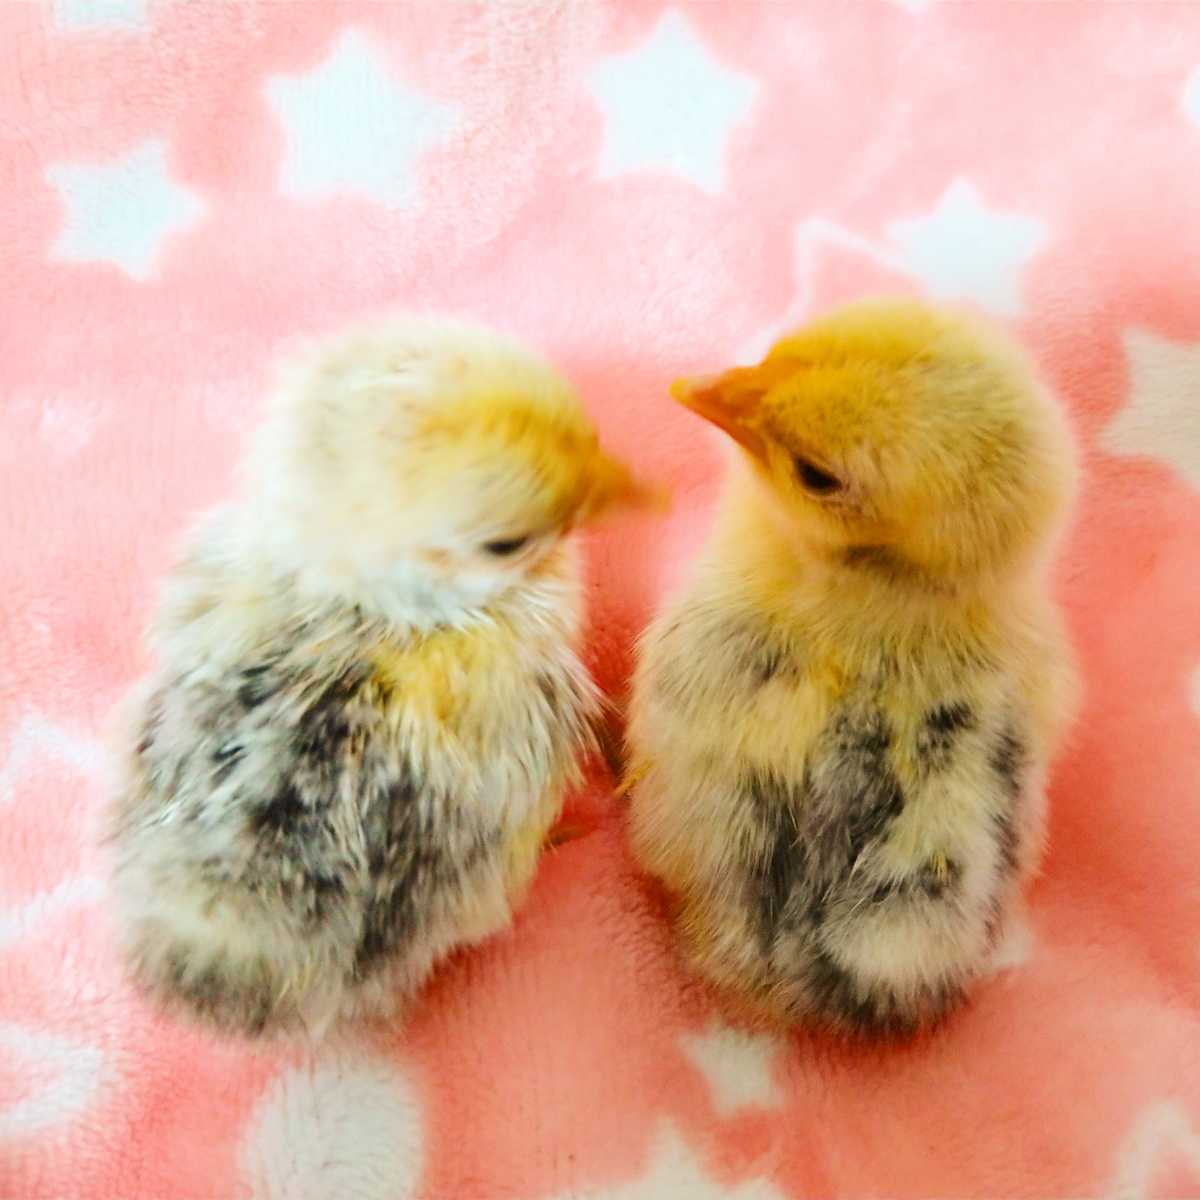 小さい鶏ミックス 有精卵 孵化用 種卵 6個_画像2